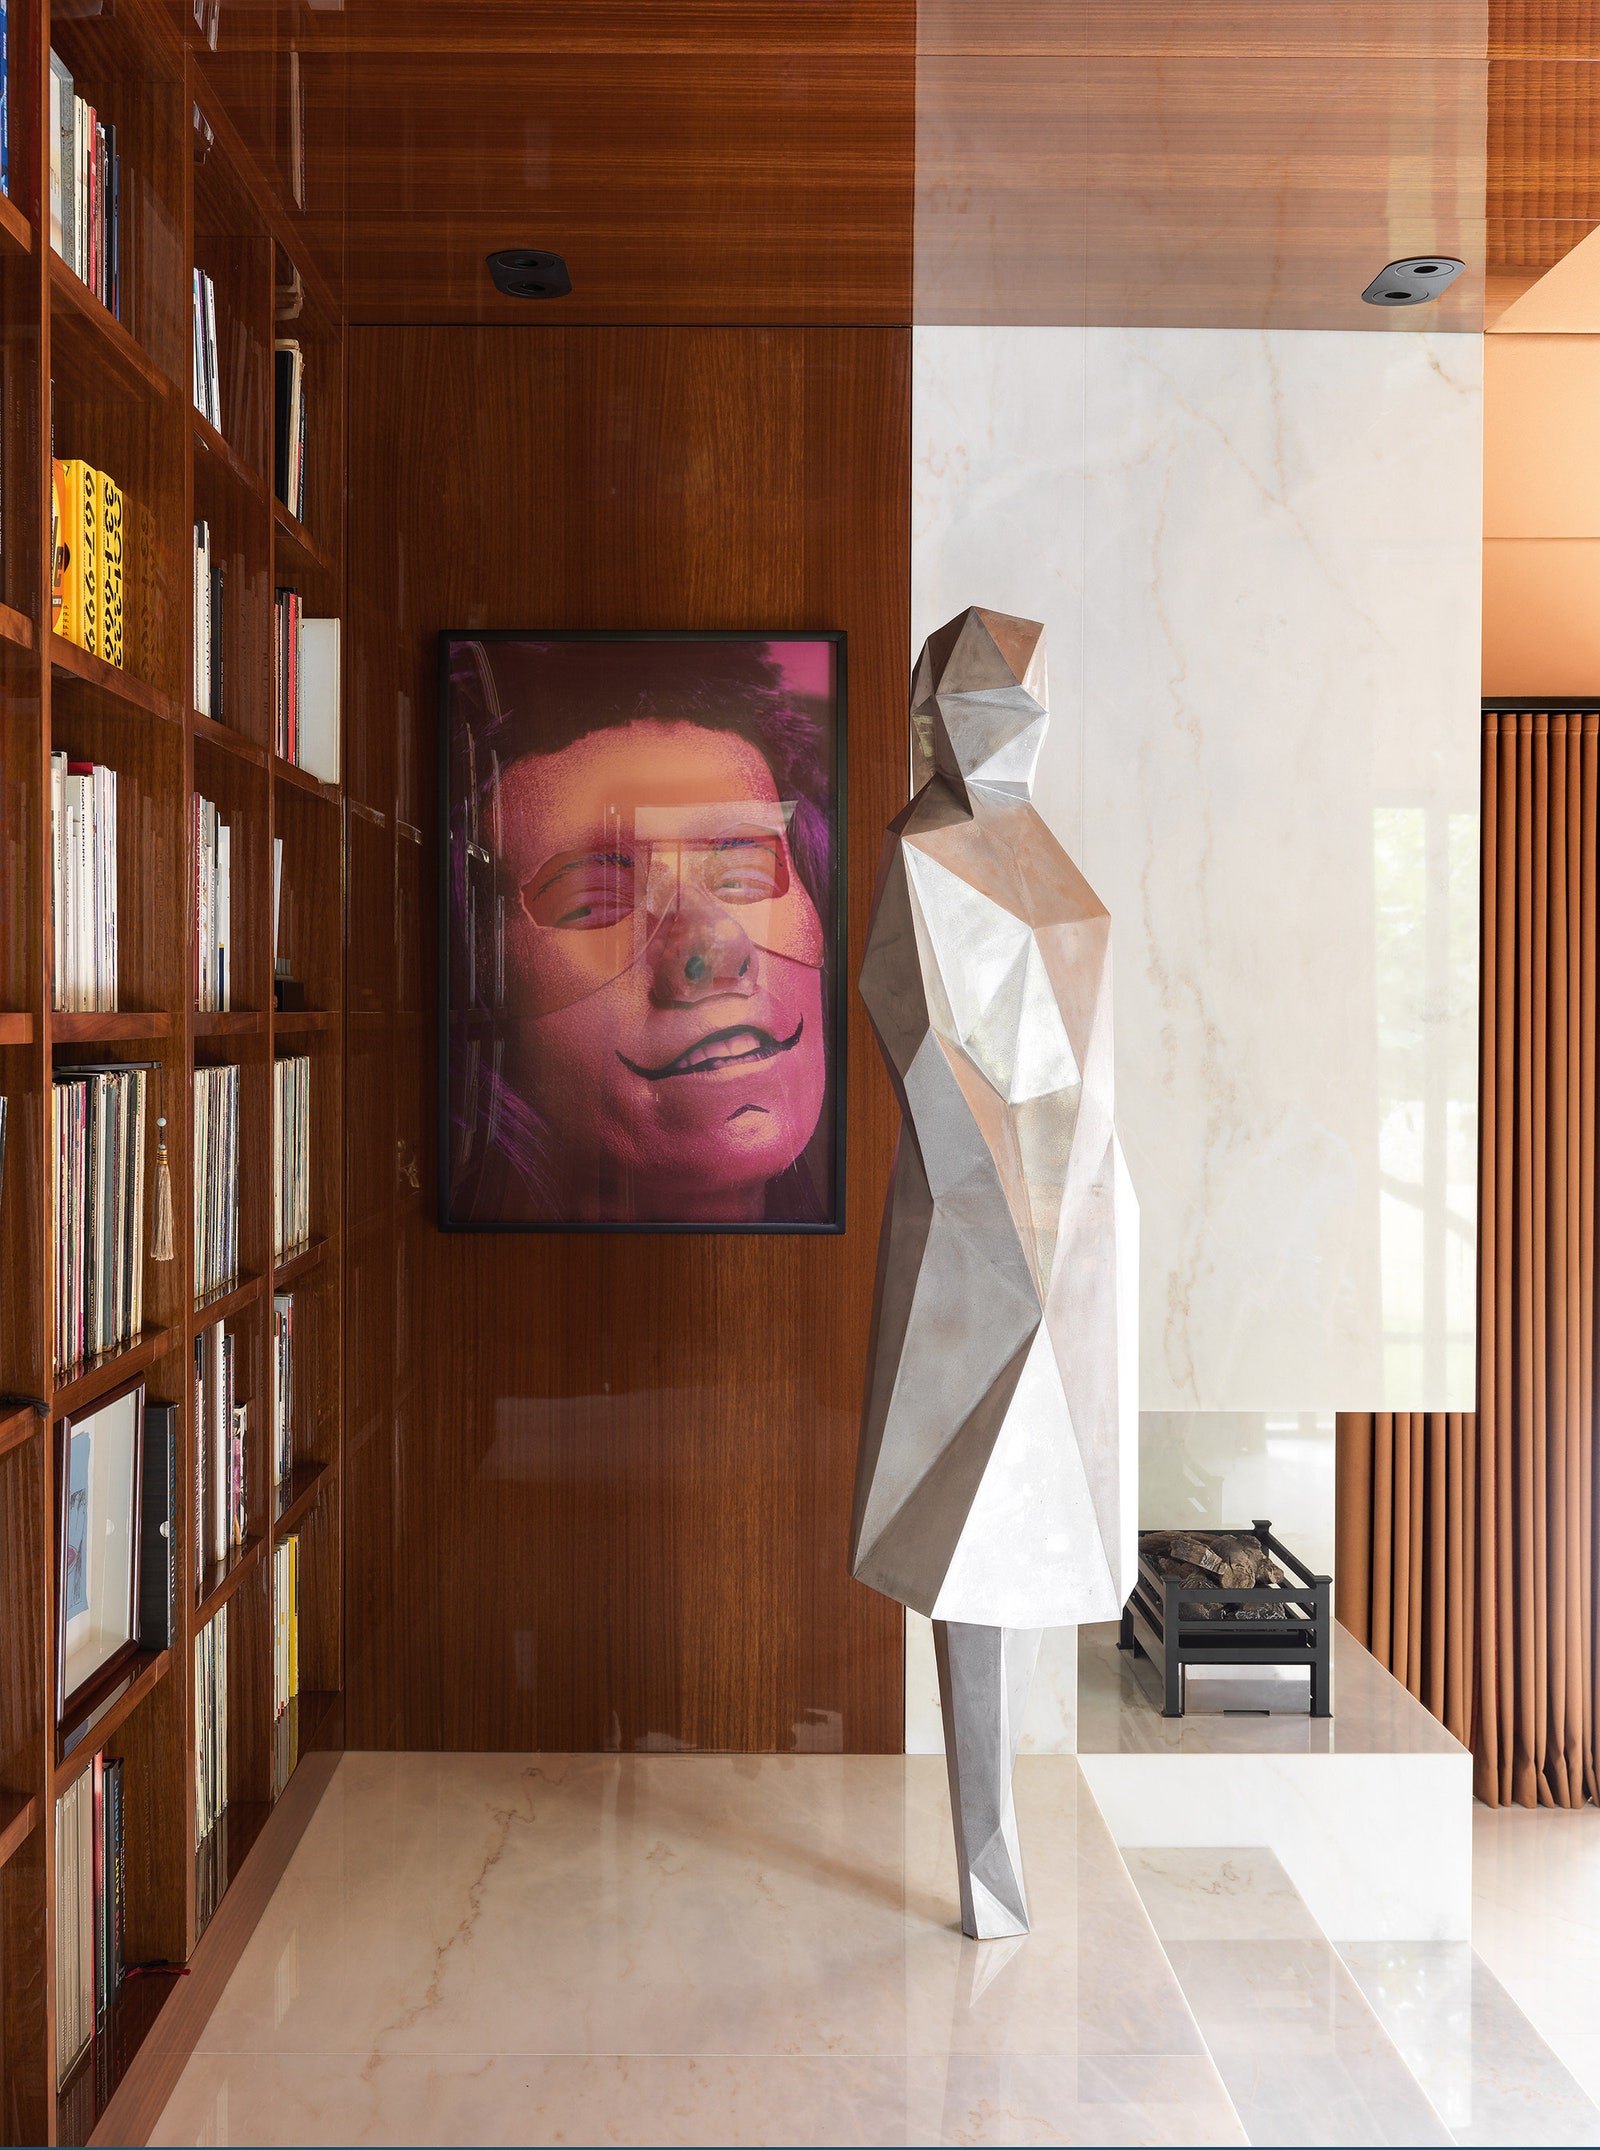 Фрагмент гостиной. На переднем плане скульптура Sophie работы Ксавье Вейана а за ней на стене фотография Синди Шерман.